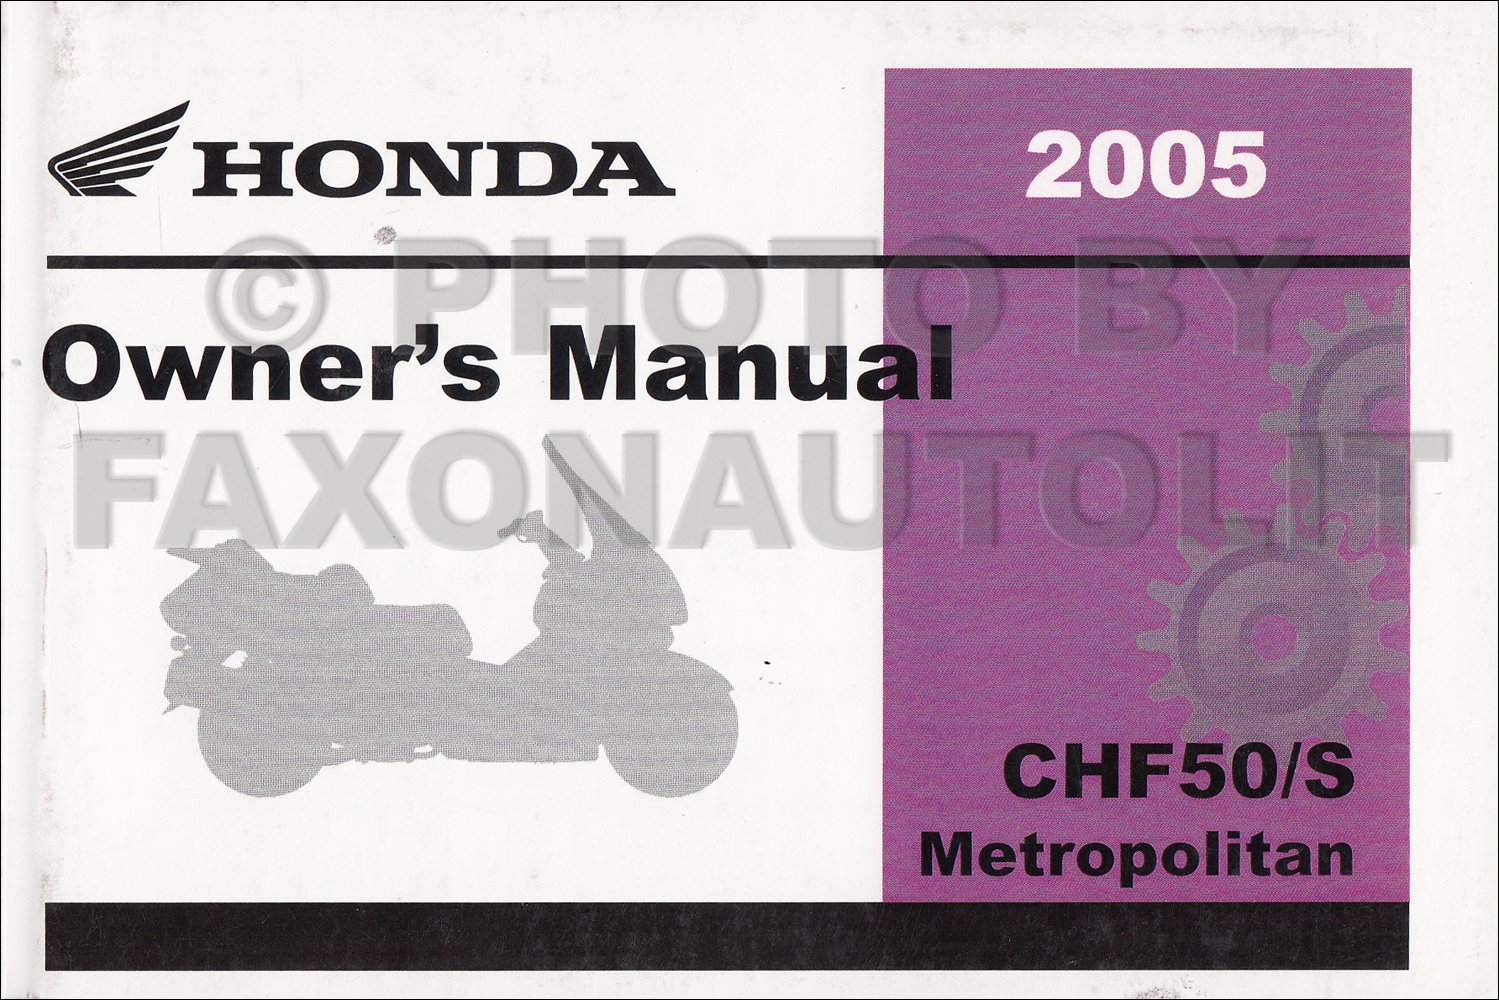 2005 Honda Metropolitan Scooter Owner's Manual Reprint